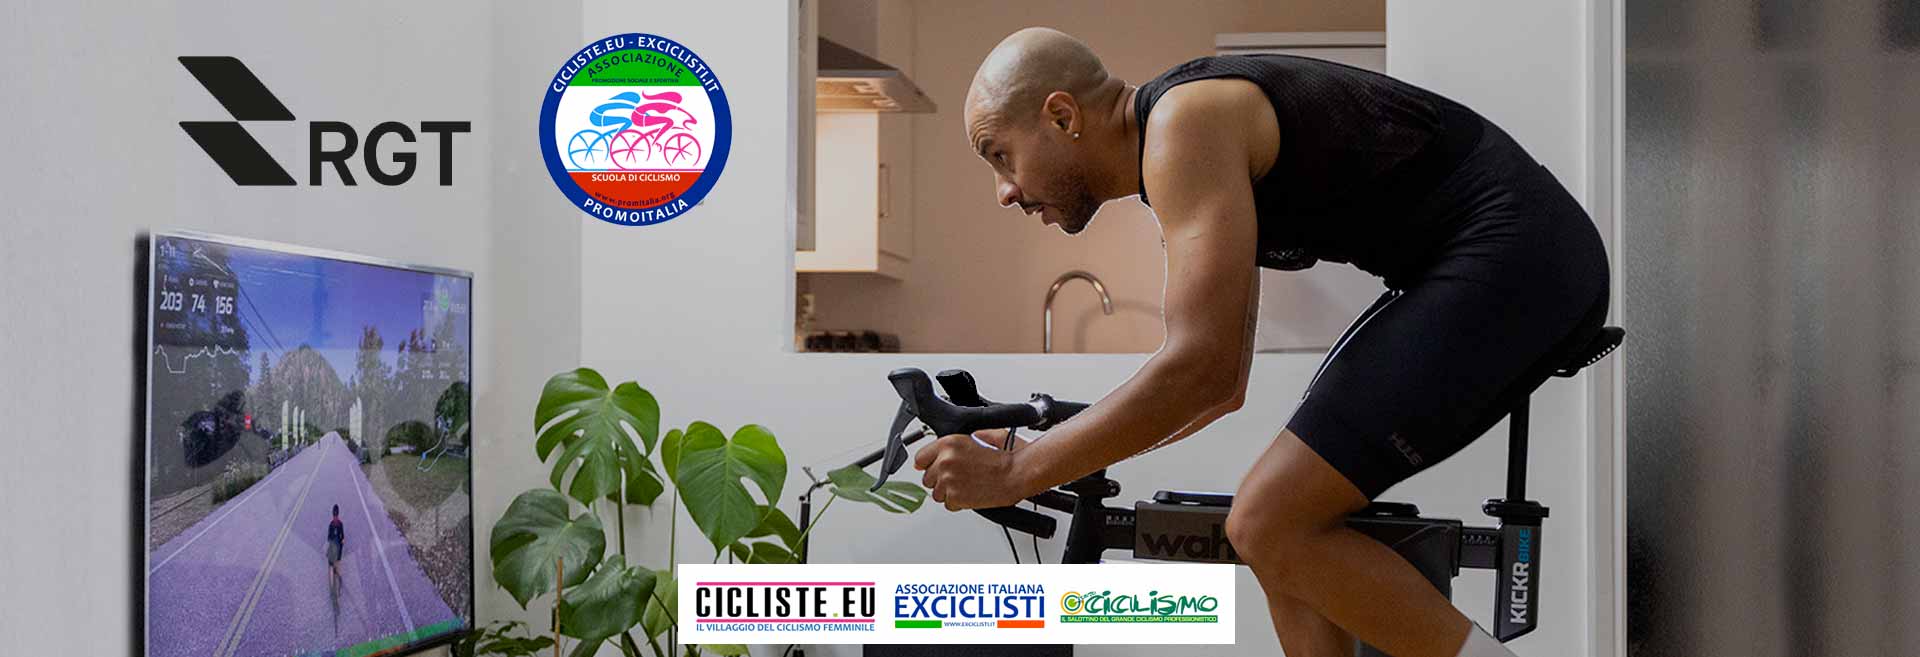 Accordo di collaborazione con la piattaforma ciclistica virtuale RGTCycling